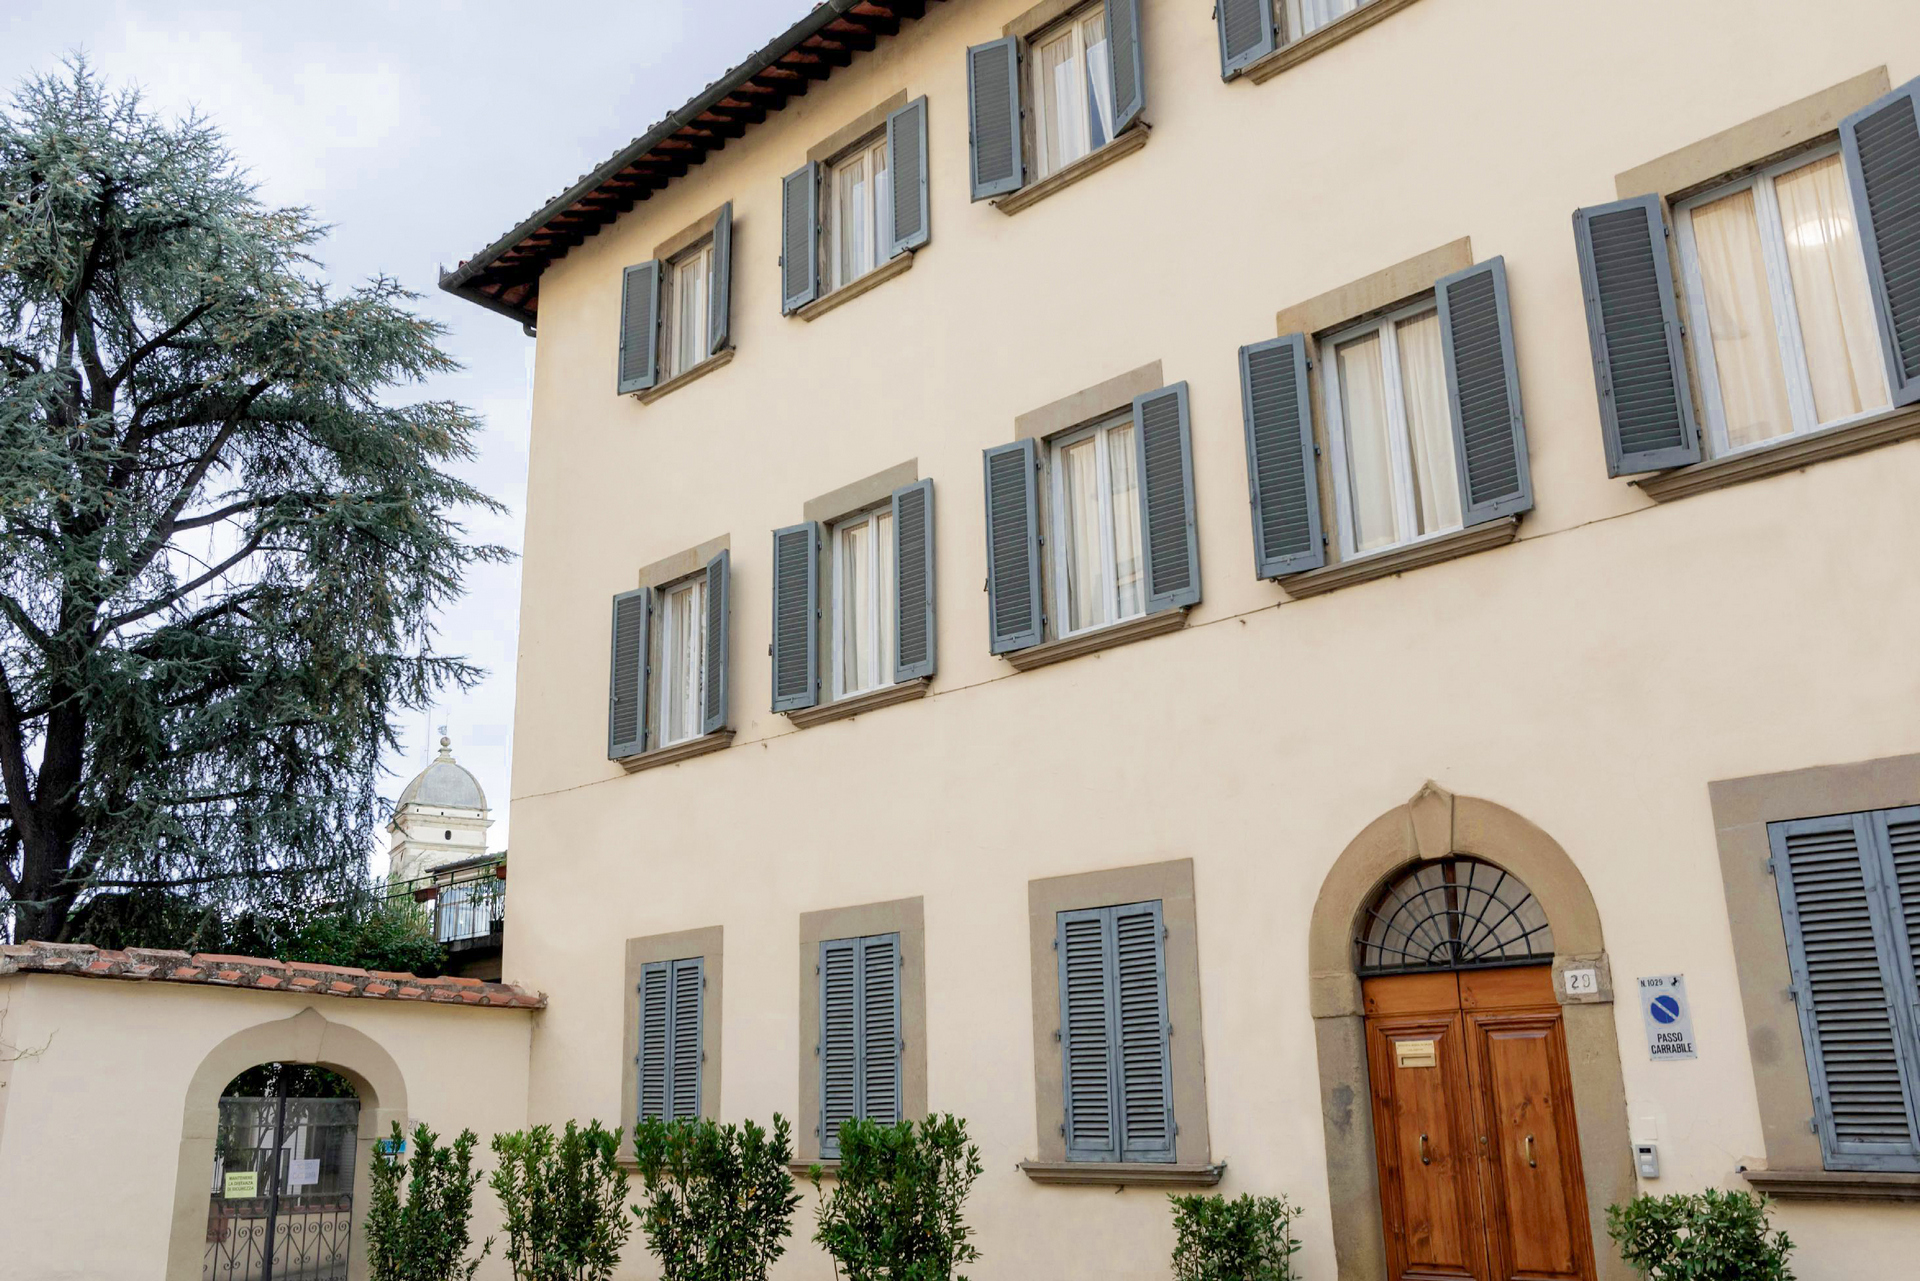 Casa di riposo Santa Maria in Gradi Arezzo